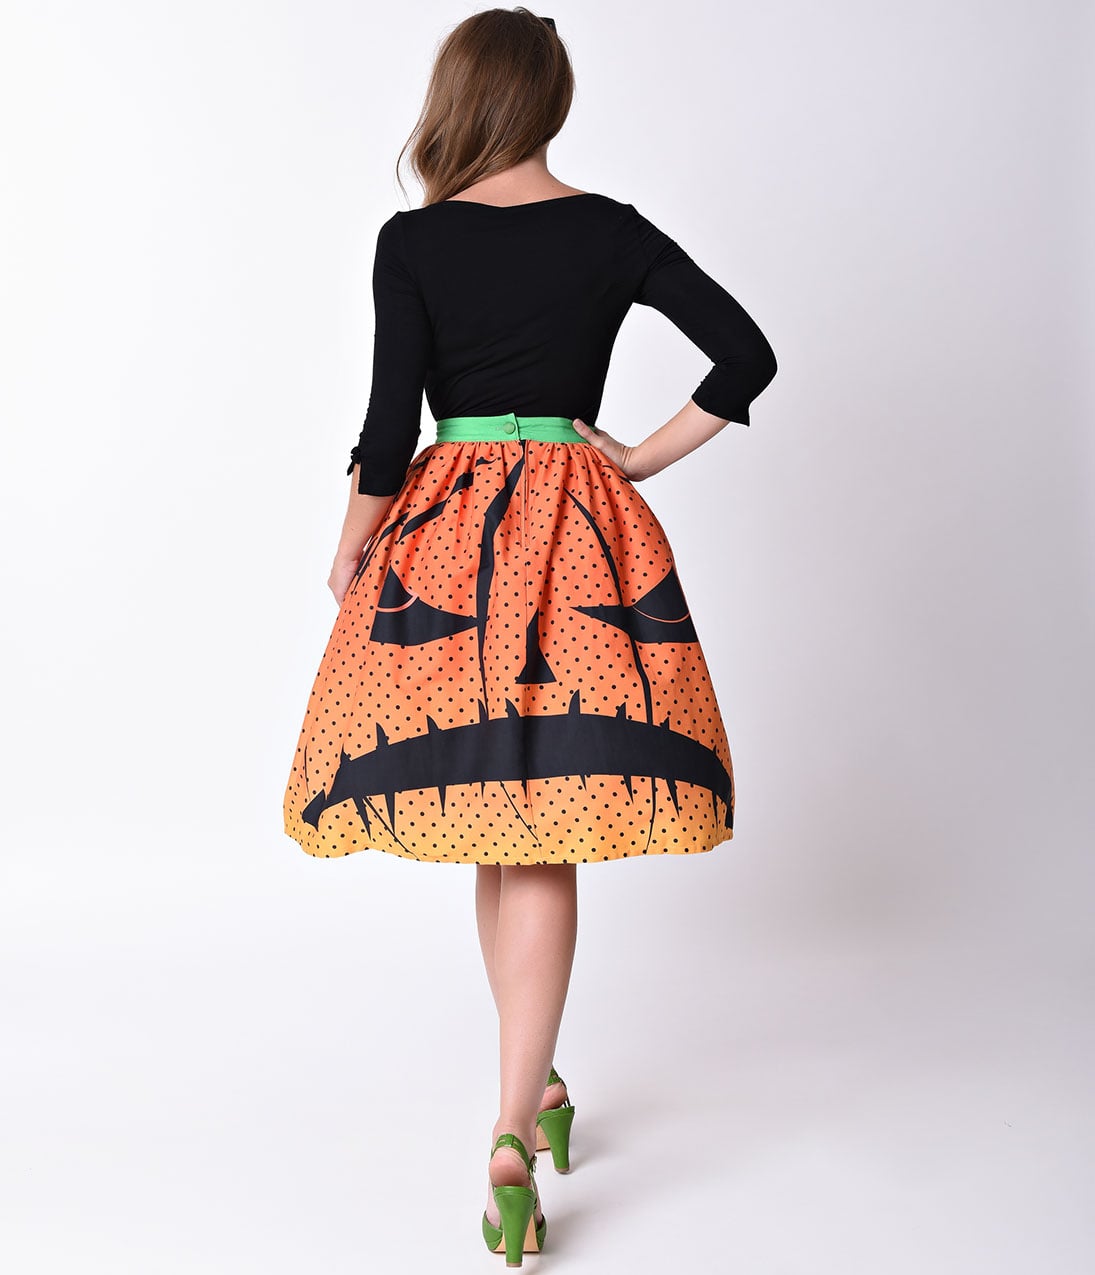 1875 Pumpkin Skirt Images Stock Photos  Vectors  Shutterstock